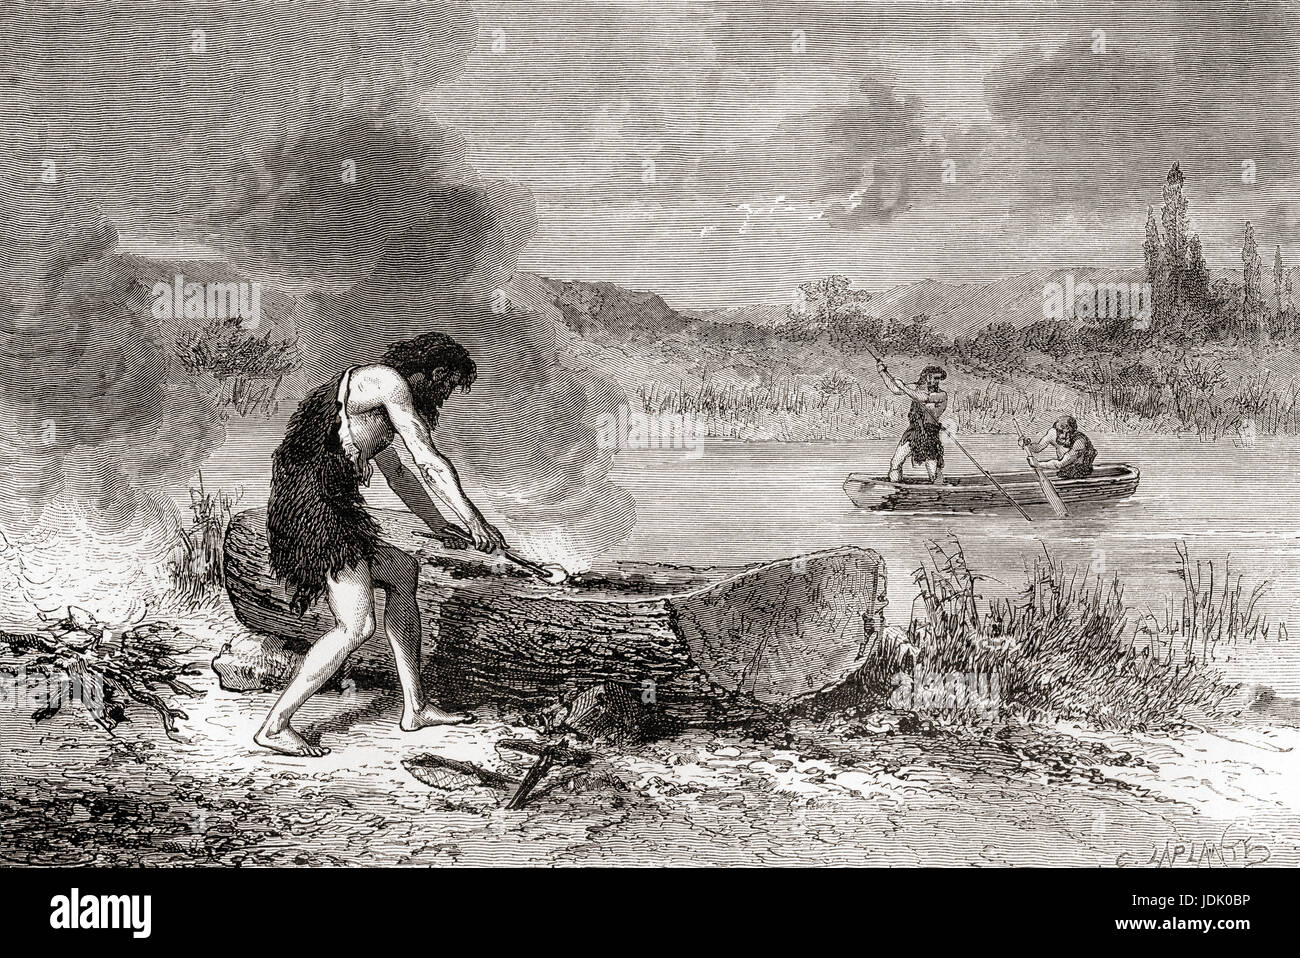 Die ersten Seefahrer während der Jungsteinzeit Alter aka Jungsteinzeit oder Alter aus poliertem Stein.  L ' Homme Primitif veröffentlichte 1870. Stockfoto